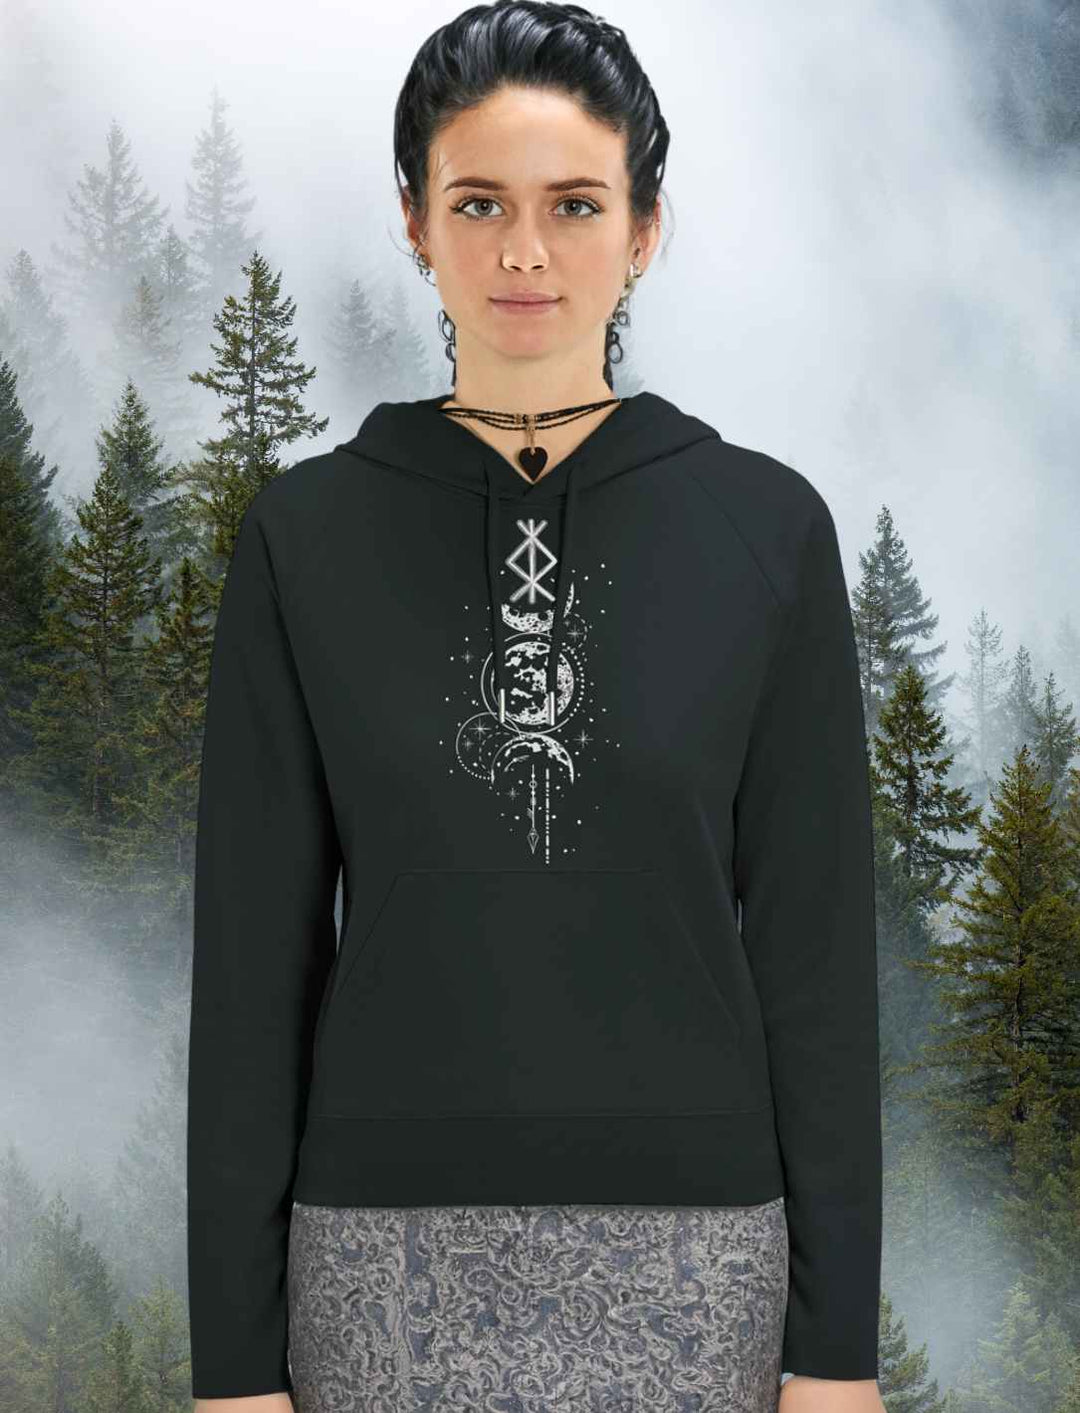 Junge dunkelhaarige Frau trägt den Woman Hoodie 'Rune des Mondscheinwächters' von Runental.de in der Farbe Schwarz.